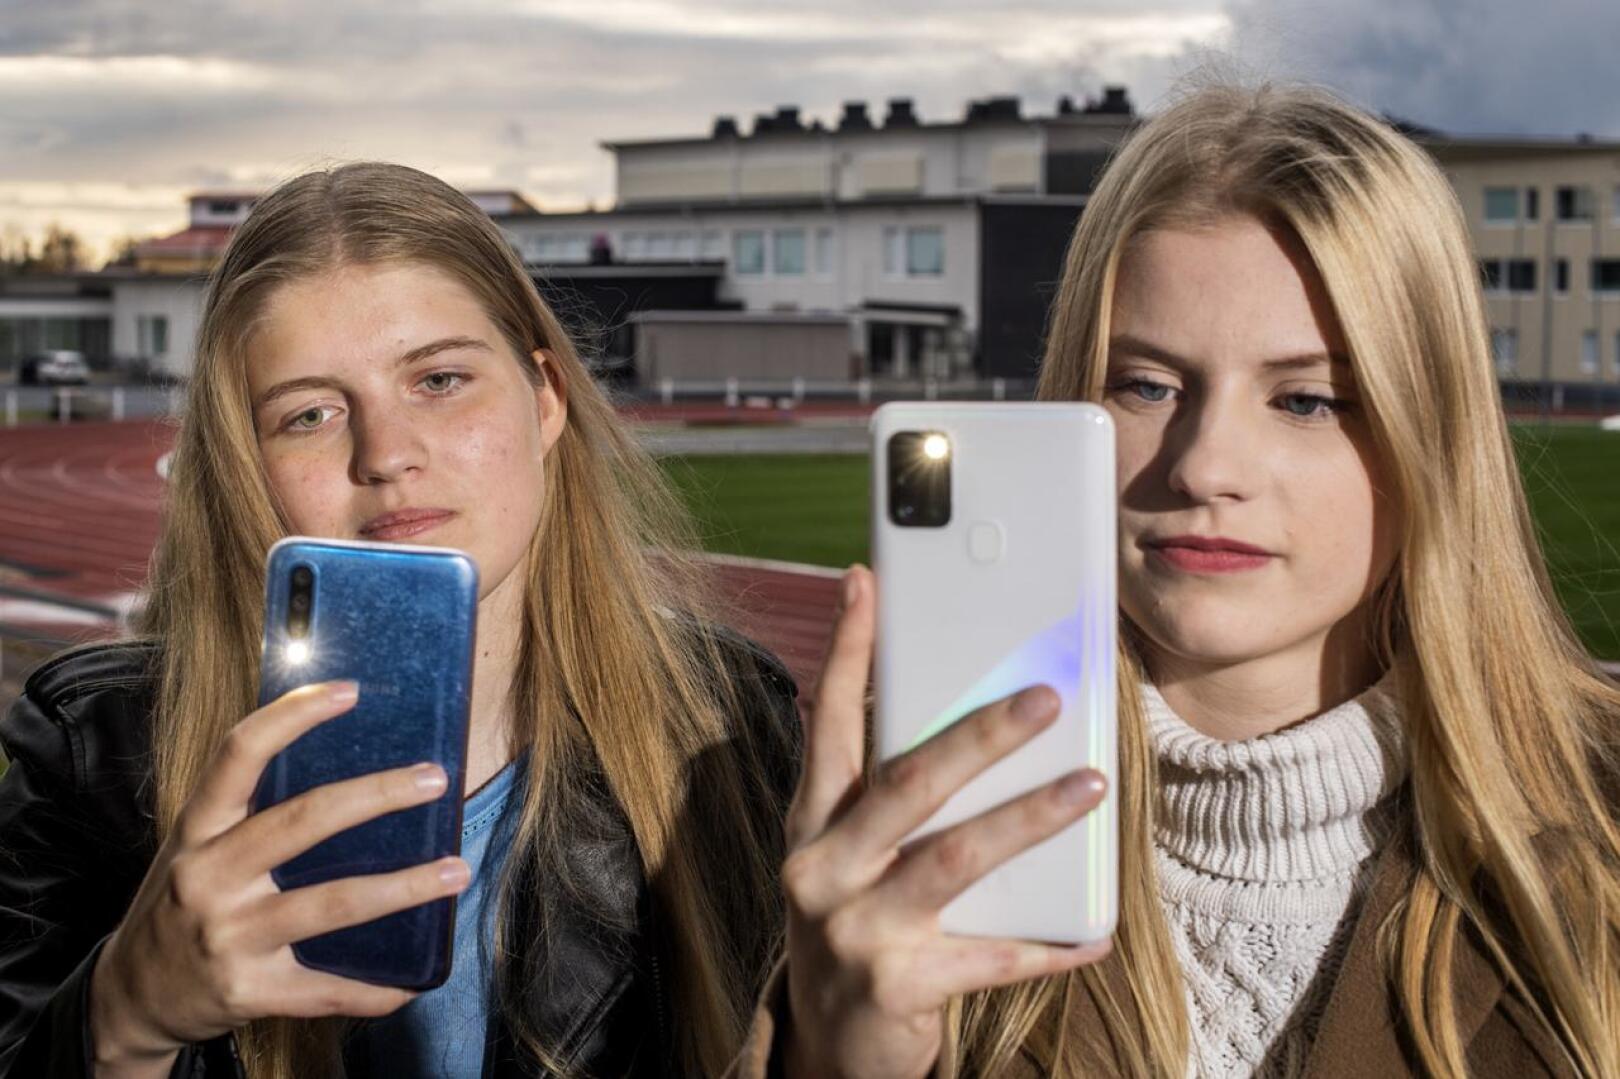 Julia Isopahkala ja Johanna Hihnala käyttävät Instagramia, Snapchatia ja TikTokia. Ne ovat heille hyvin tärkeitä välineitä yhteydenpitoon kavereiden kanssa.